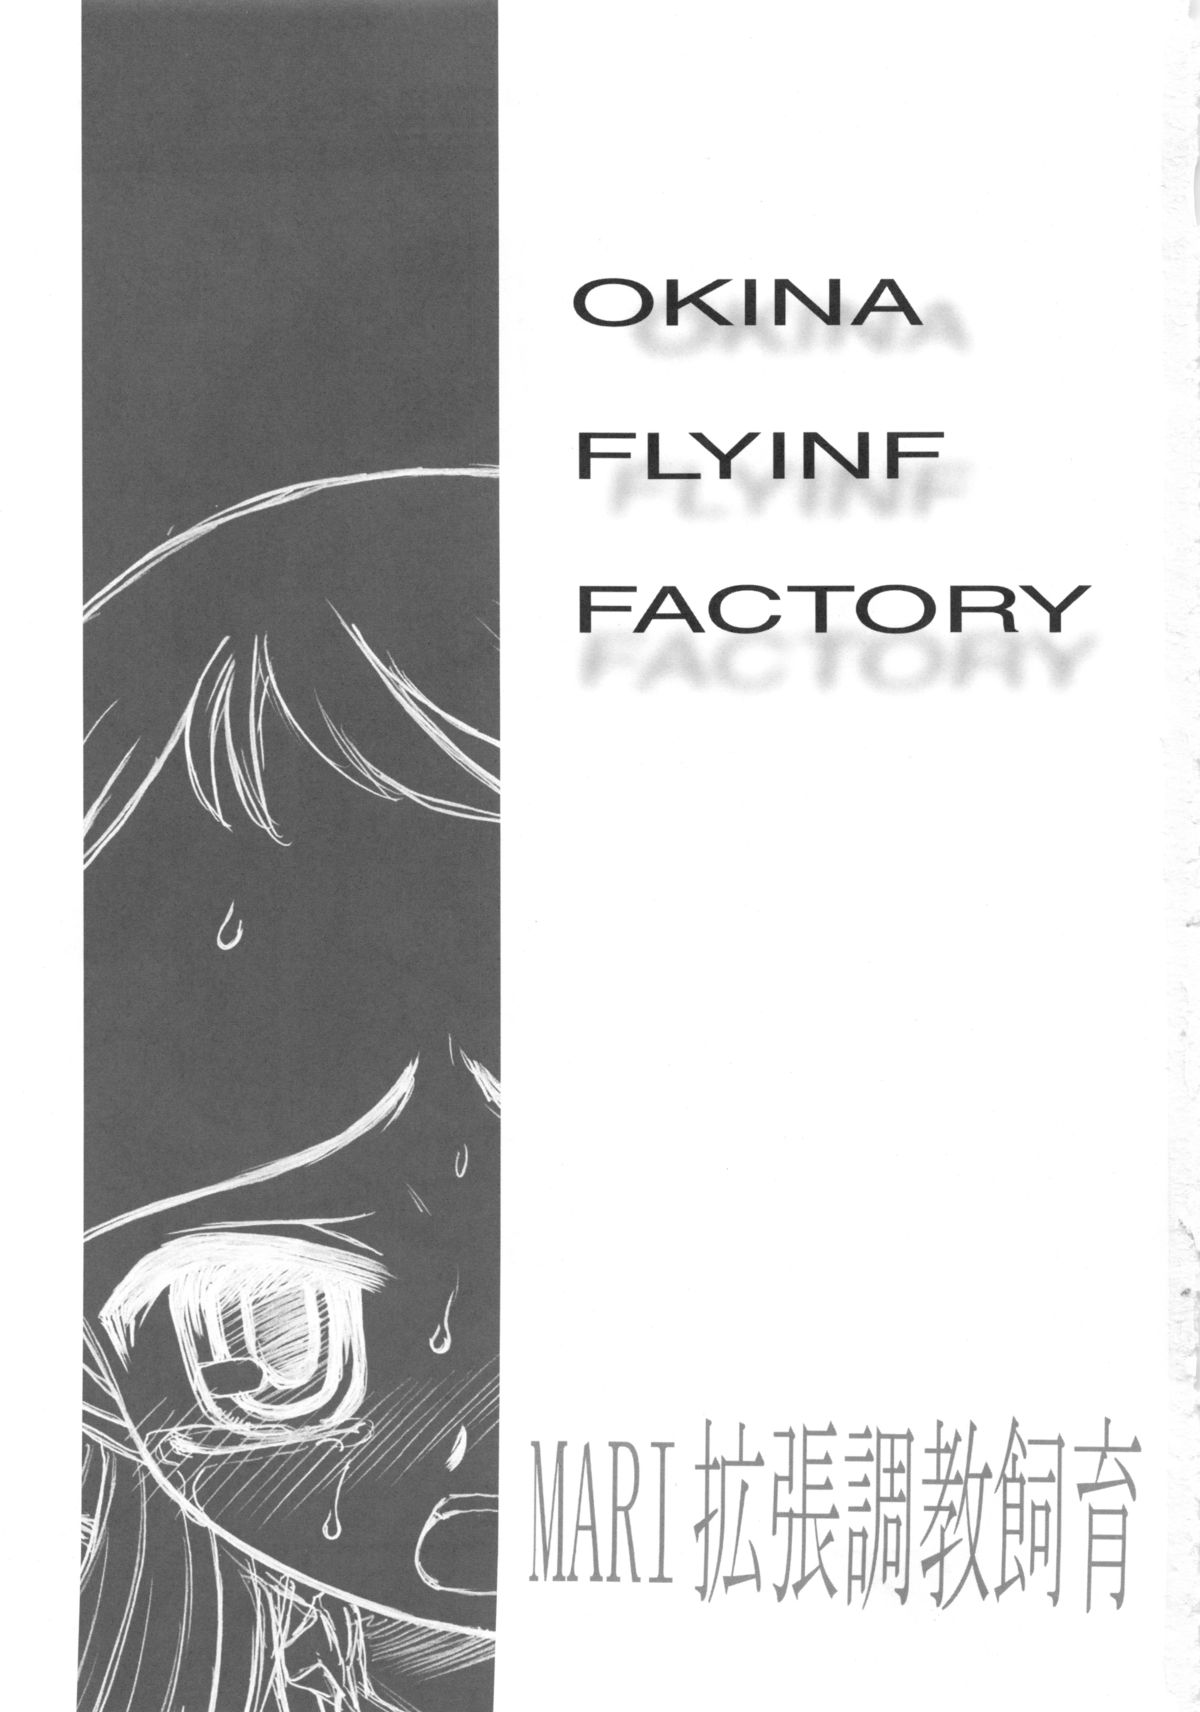 [Okina Flying Factory (OKINA)] MARI拡張調教飼育